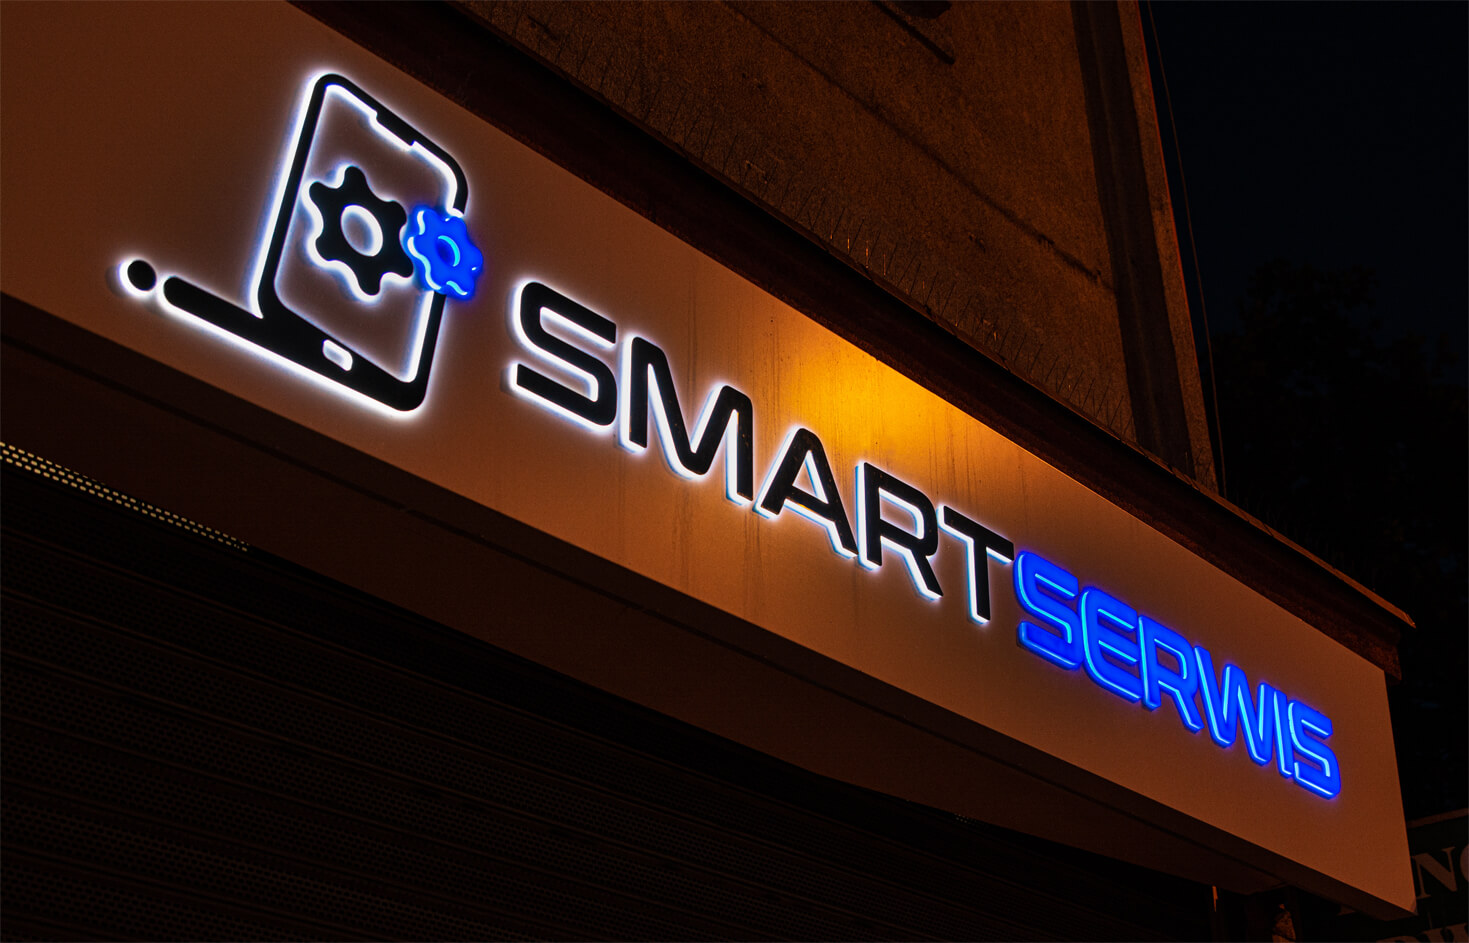 smart servis - Smart Servis - reklama przestrzenna na kasetonie umieszczona nad wejsciem